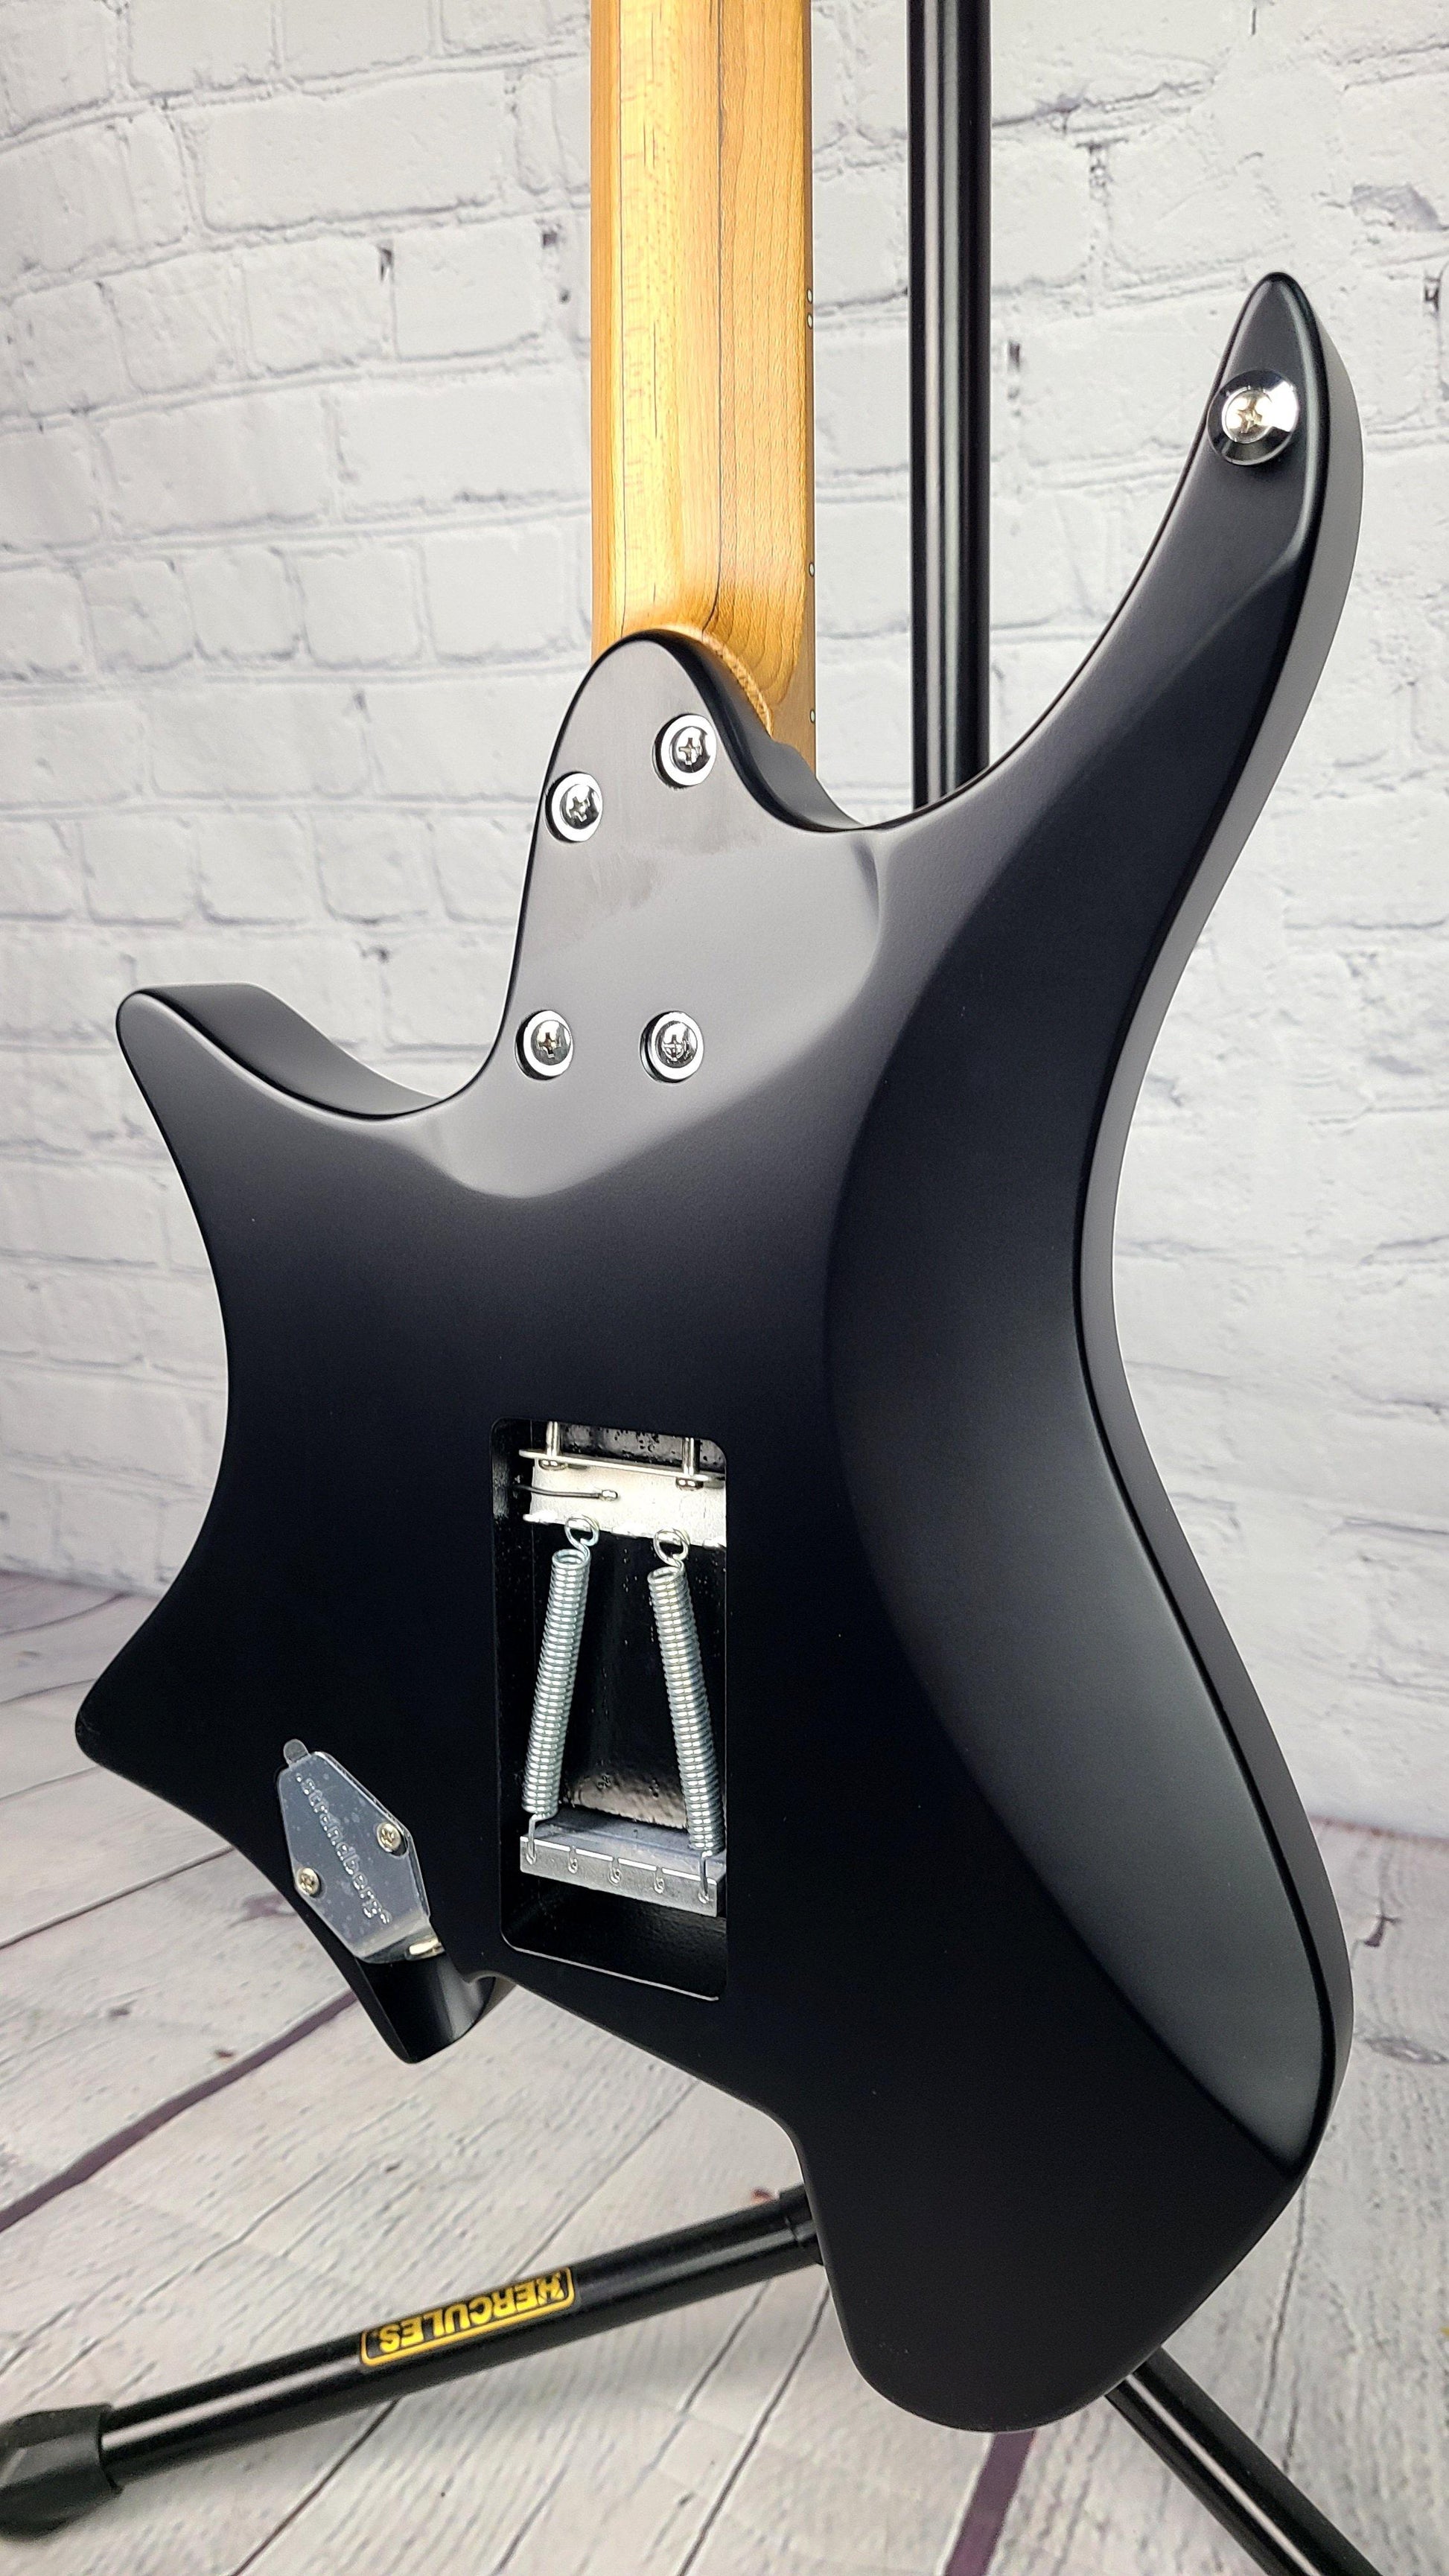 Strandberg Boden Classic 6 Tremolo Svarten LE Limited Edition (C2106036) 100pc Worldwide - Guitar Brando